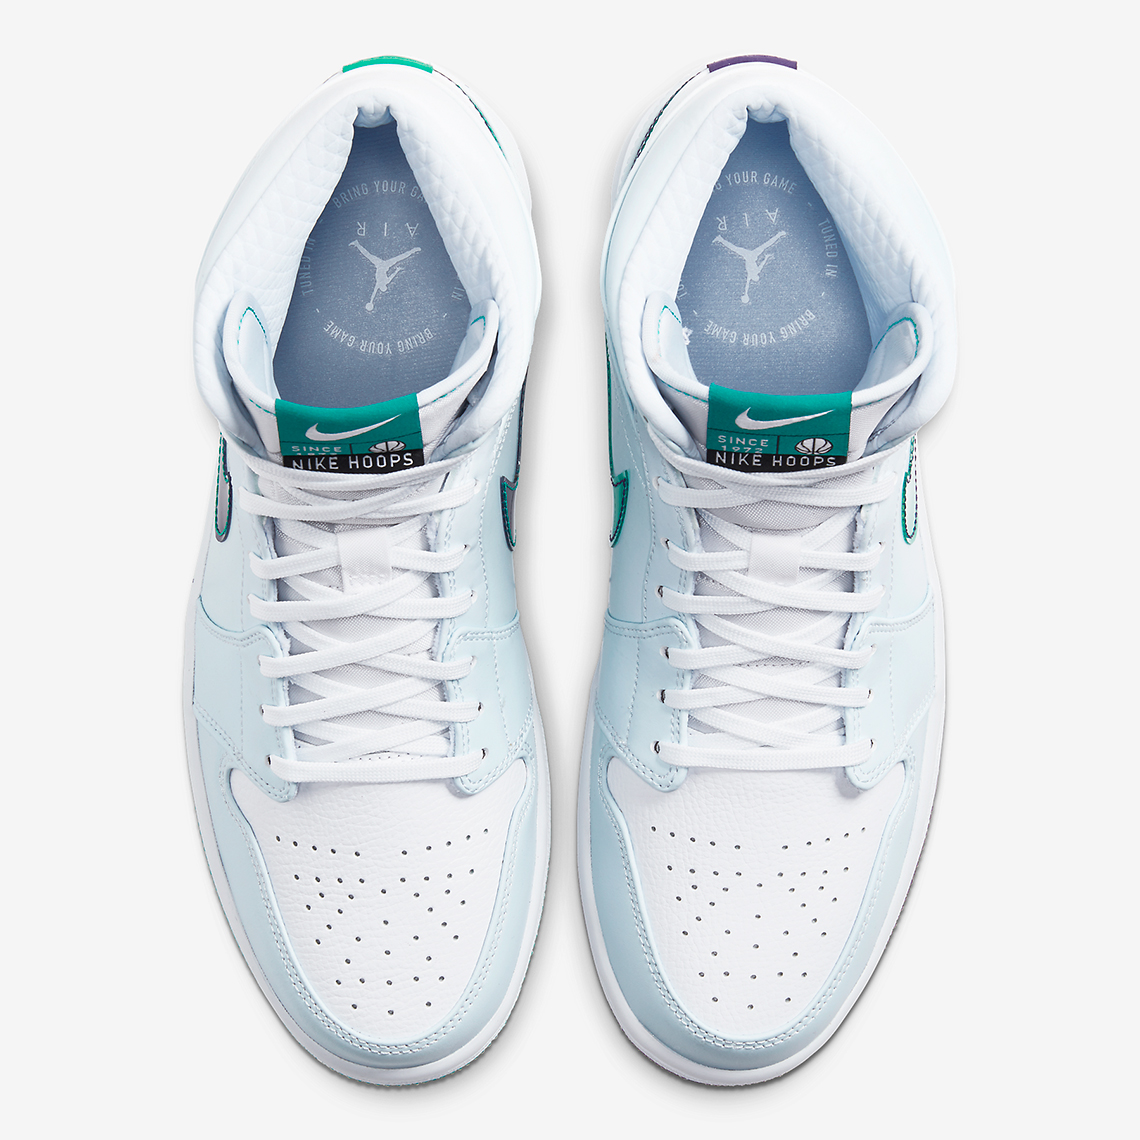 Air Jordan 1 Mid Nike Hoops CW5853-100 Release Date | SneakerNews.com